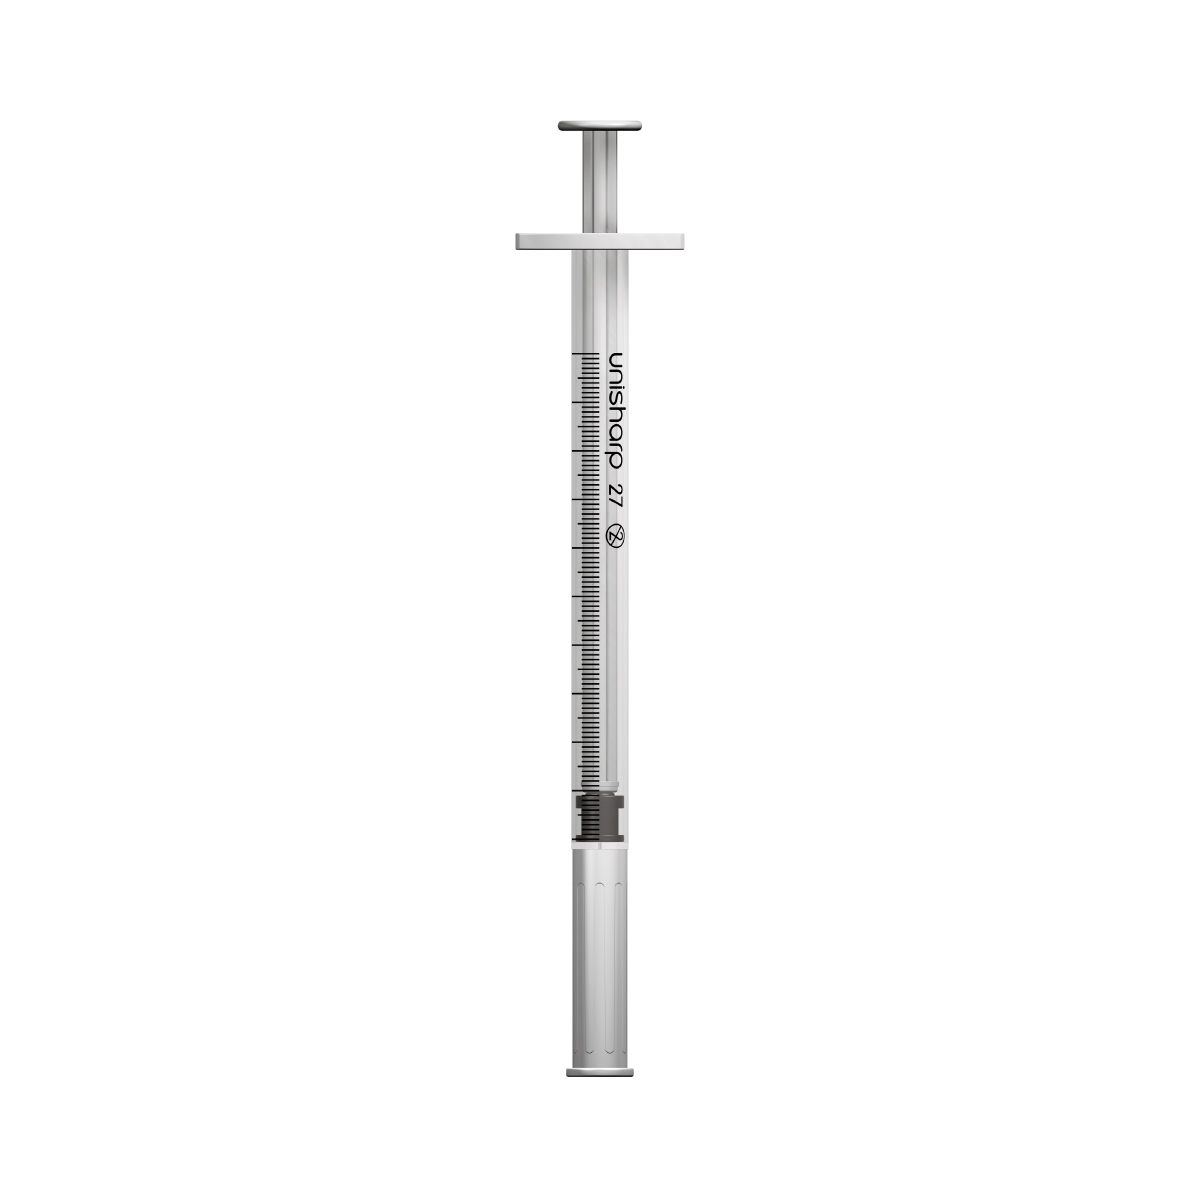 Unisharp 1ml 27G fixed needle syringe: White 